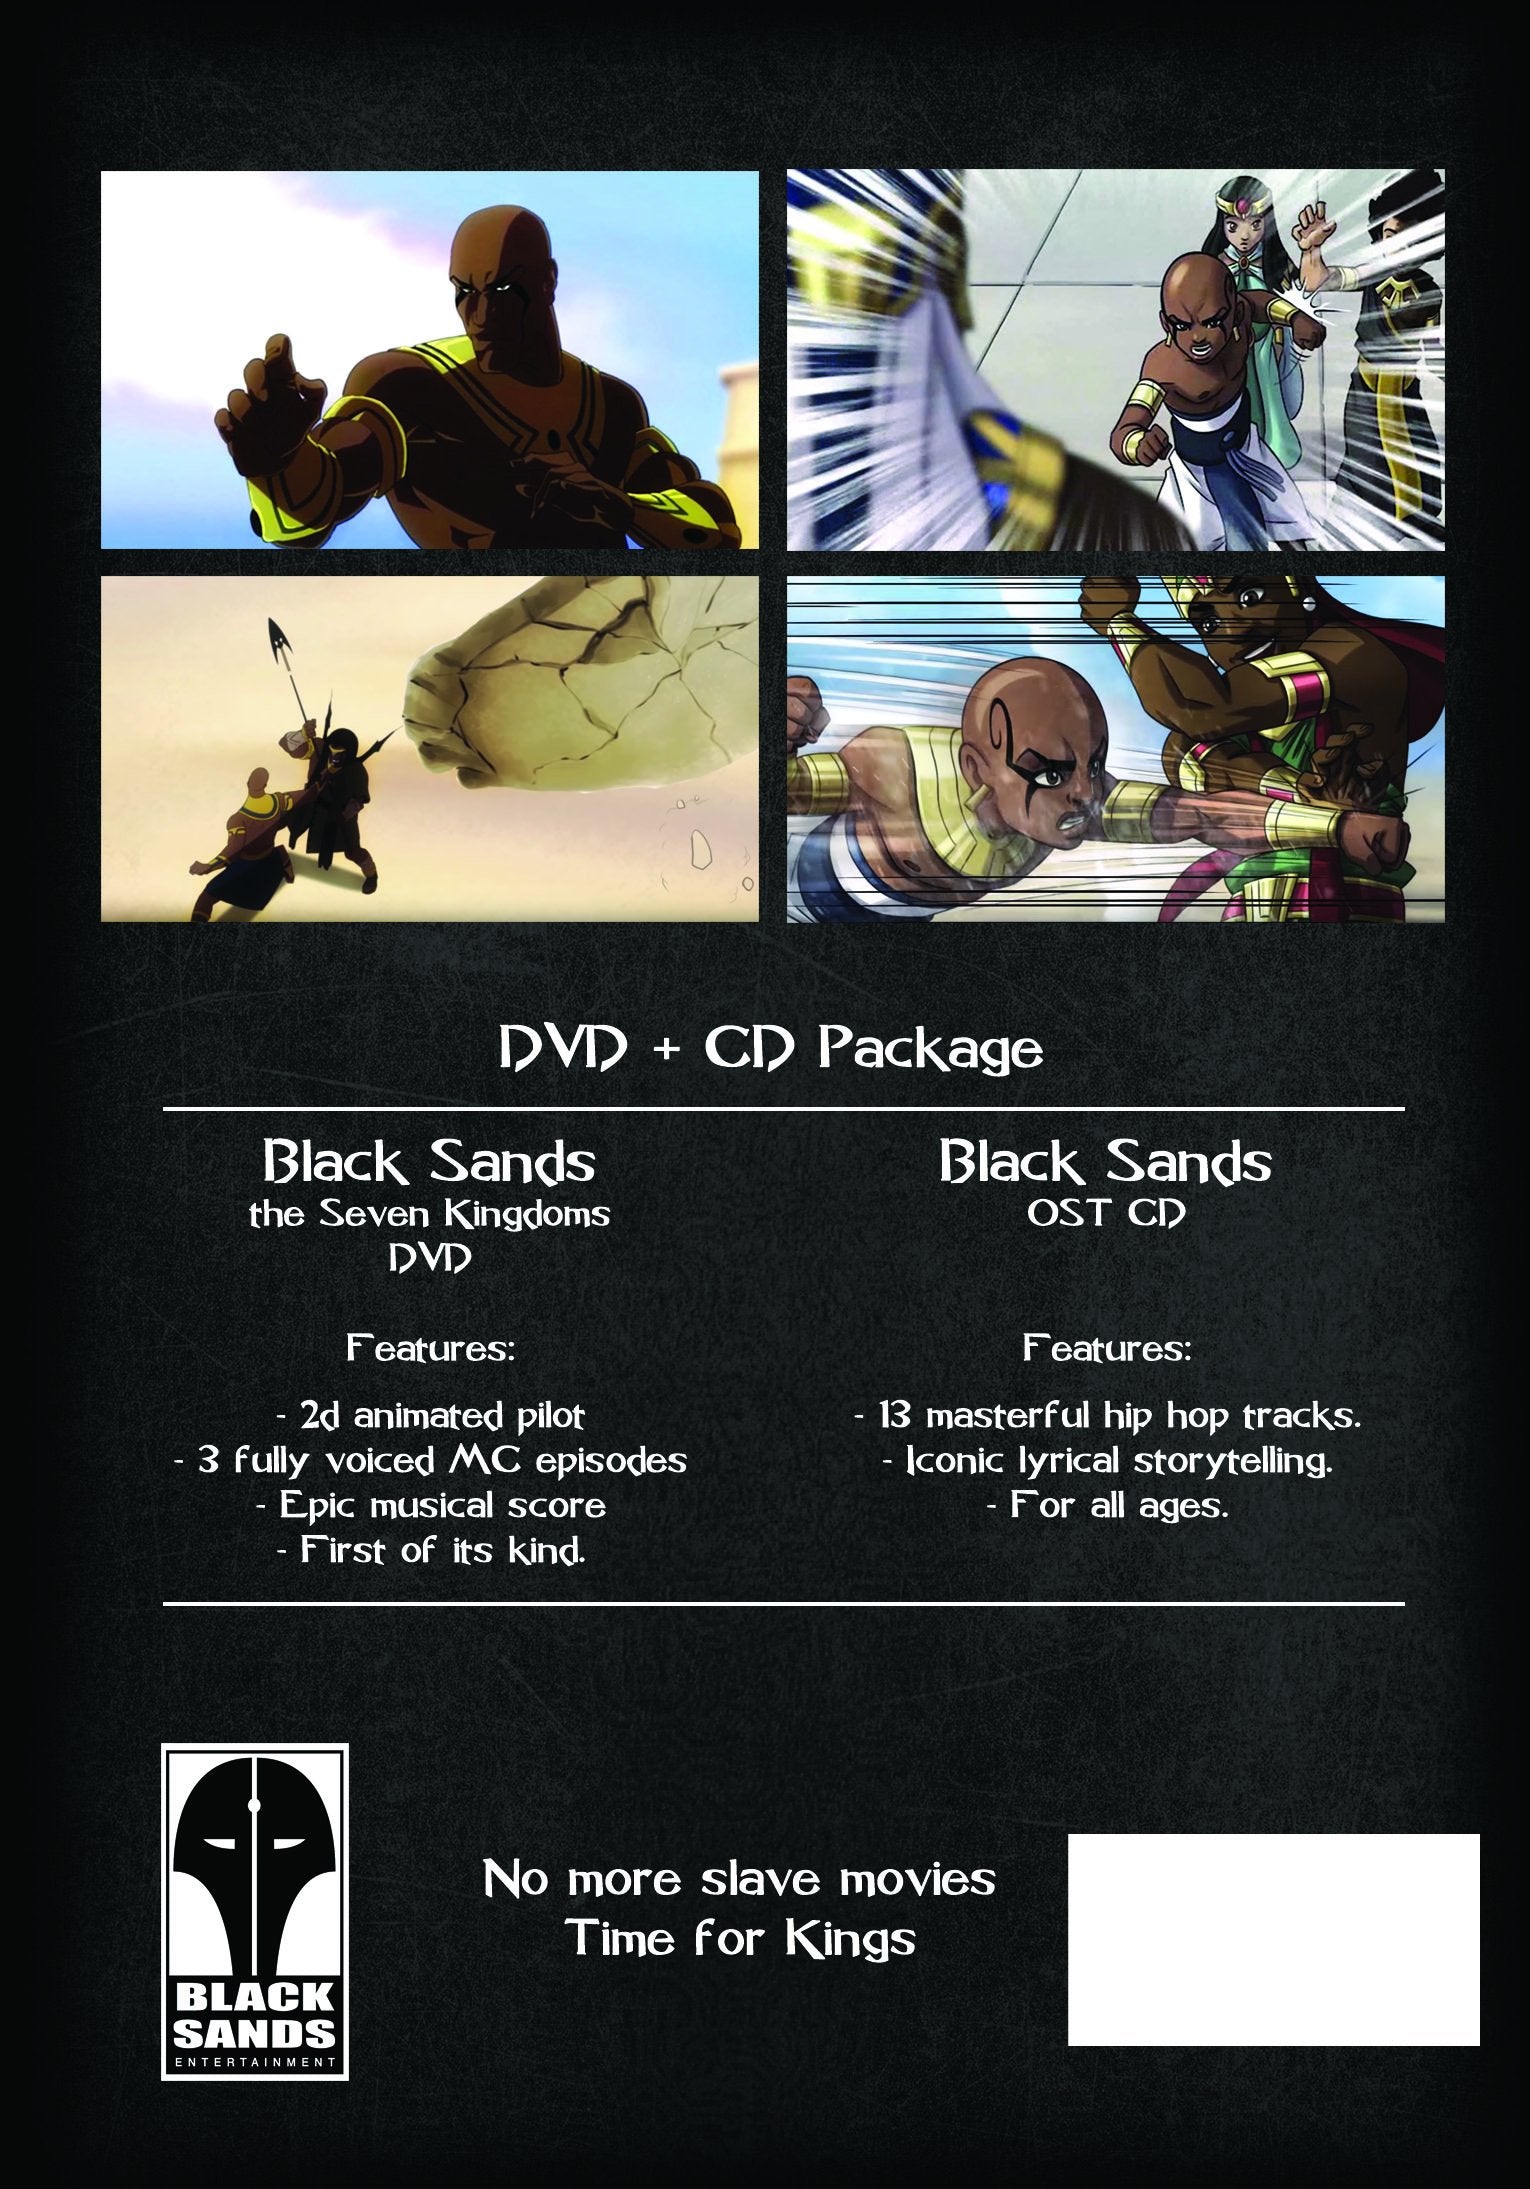 Black Sands Animation DVD